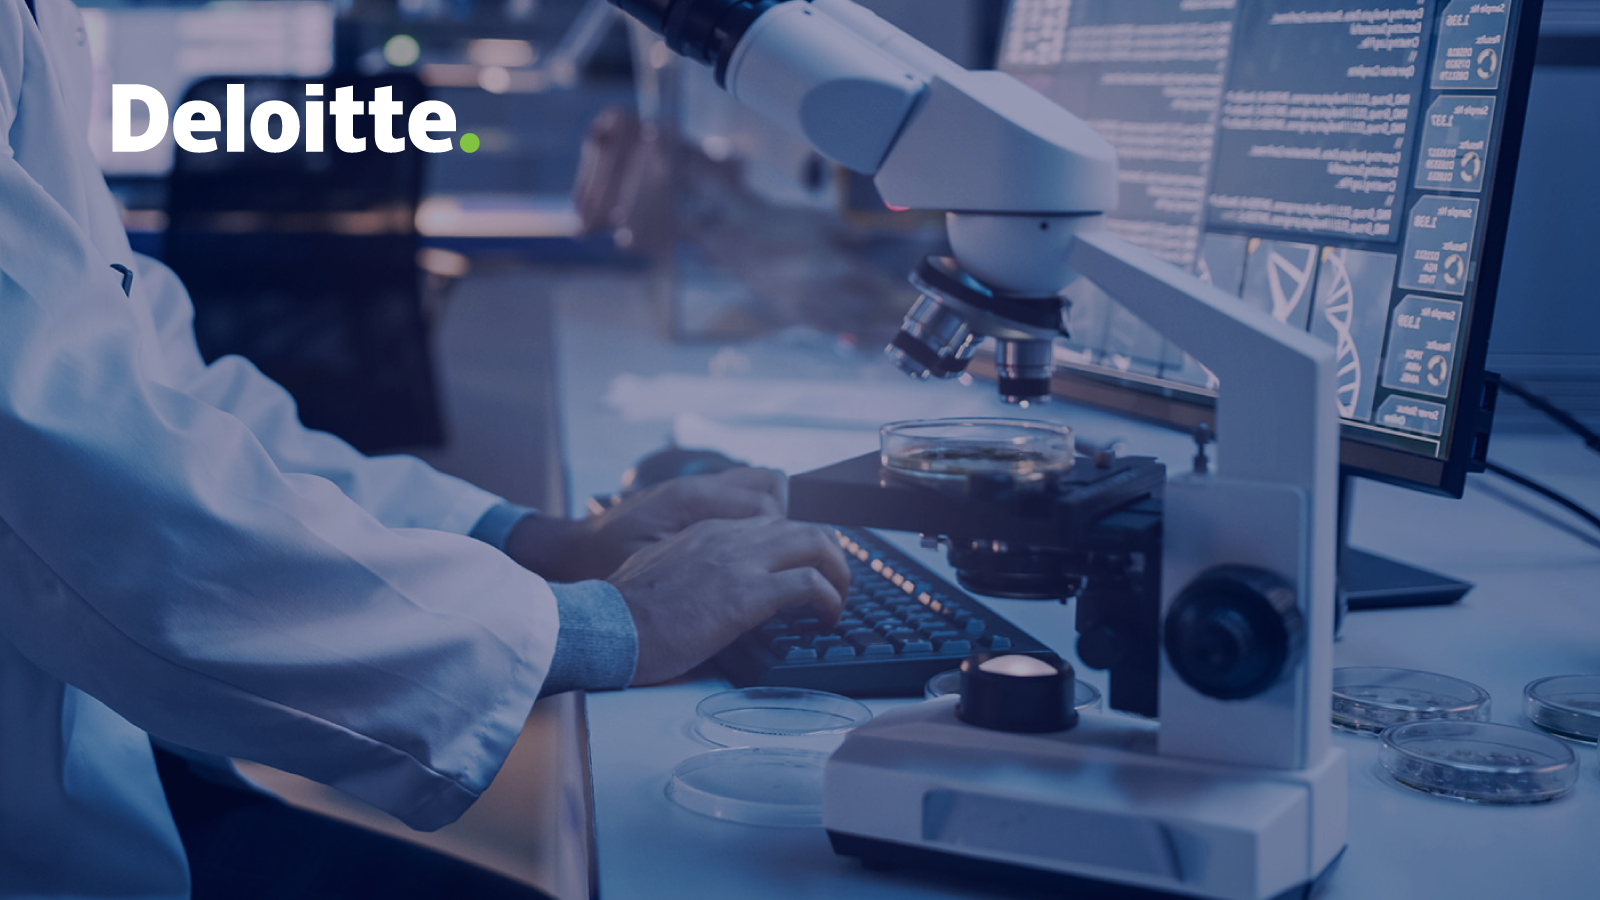 Graphic: Deloitte logo over a photo of a lab technician